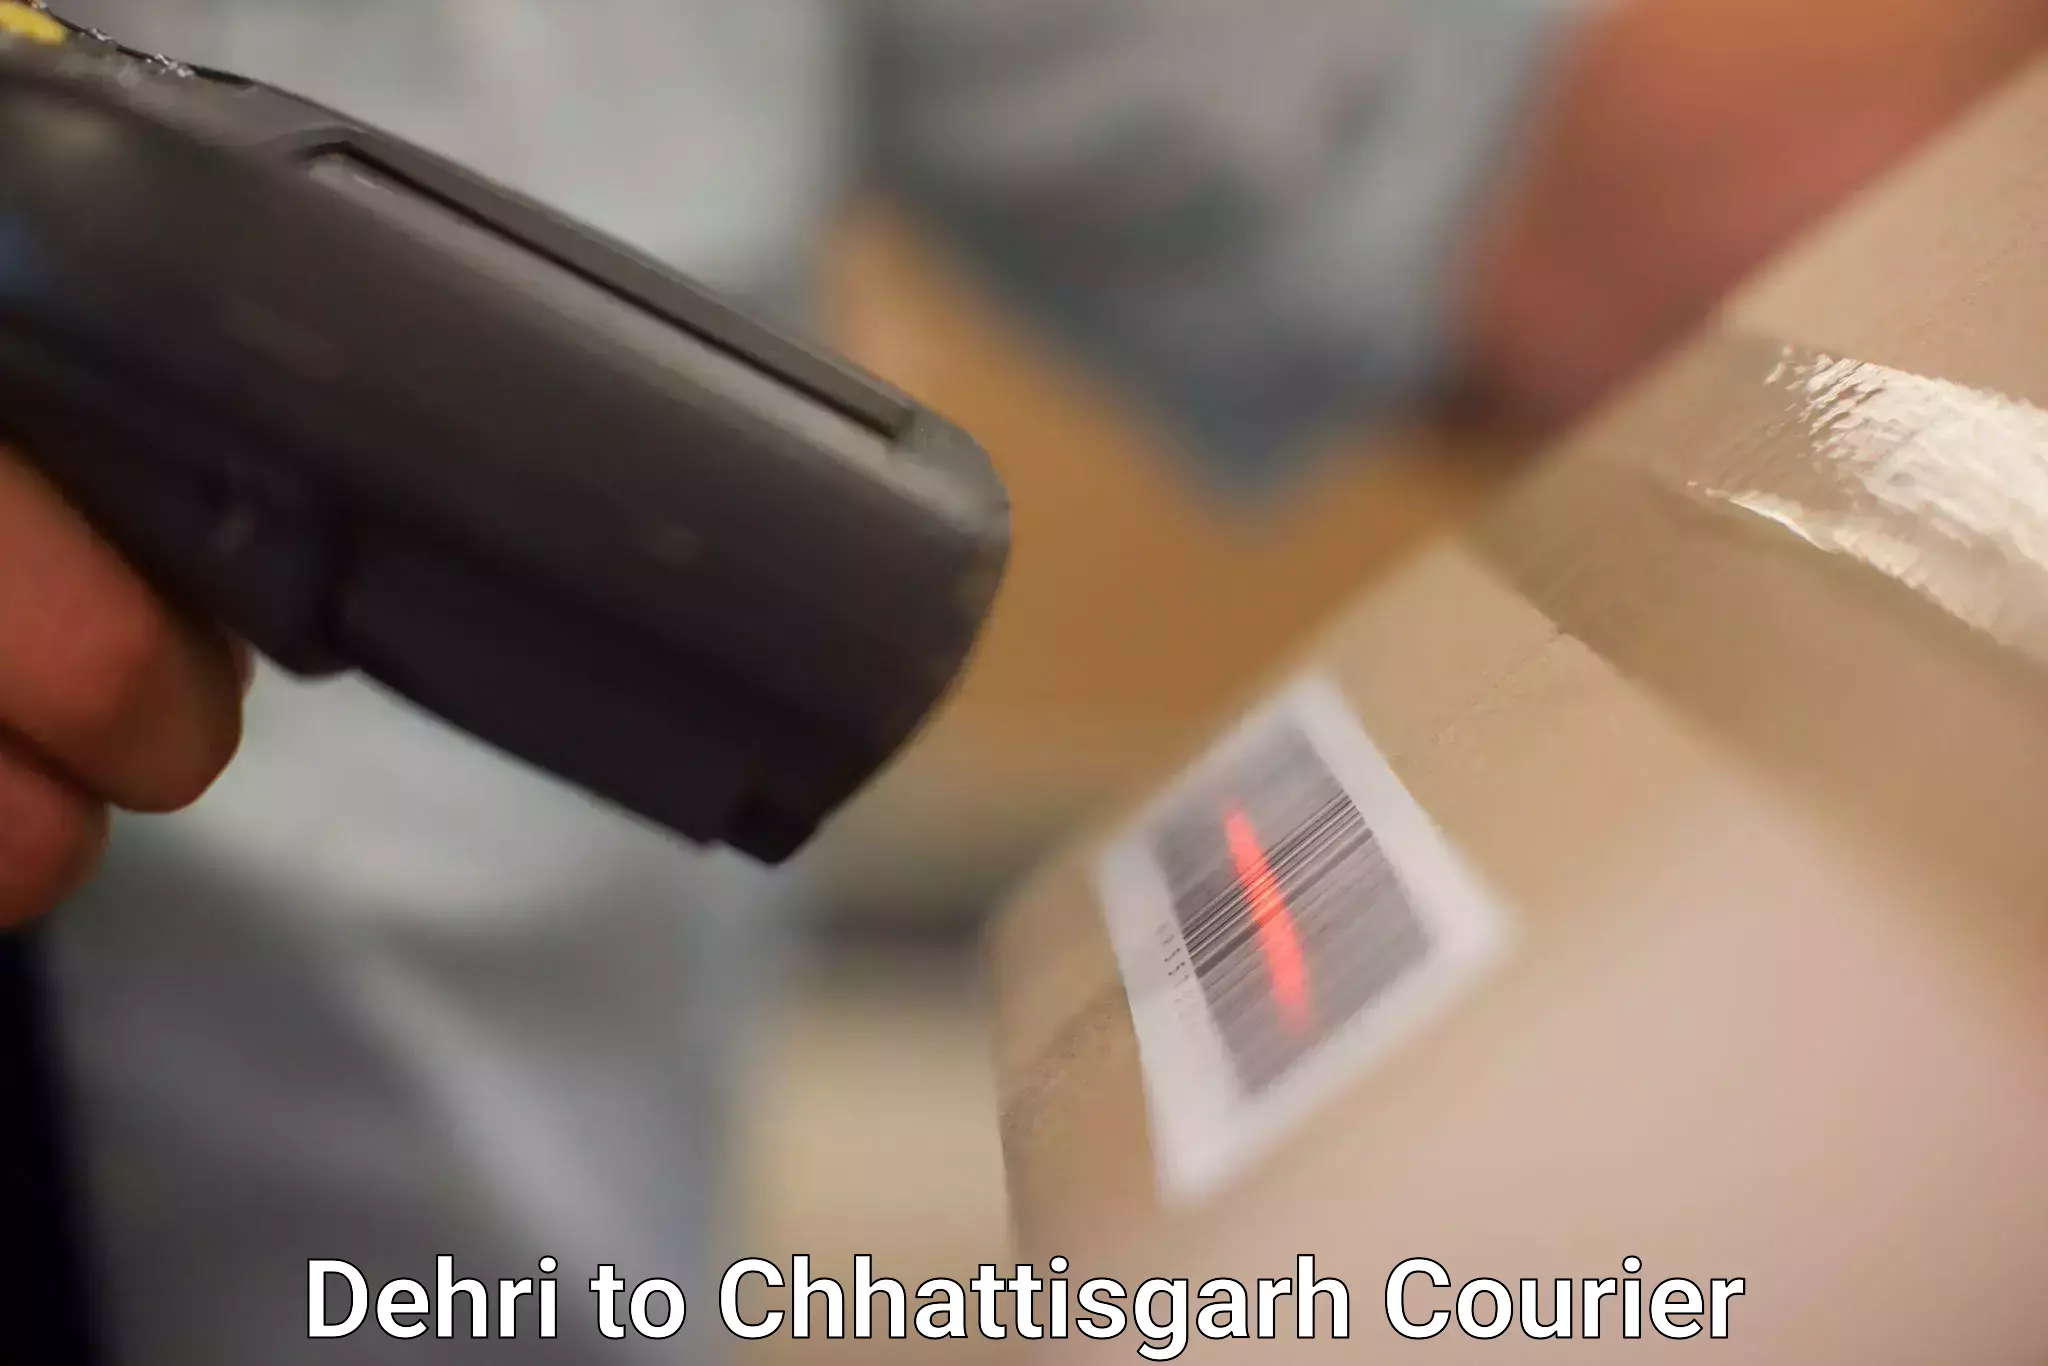 Corporate courier solutions Dehri to Chhattisgarh